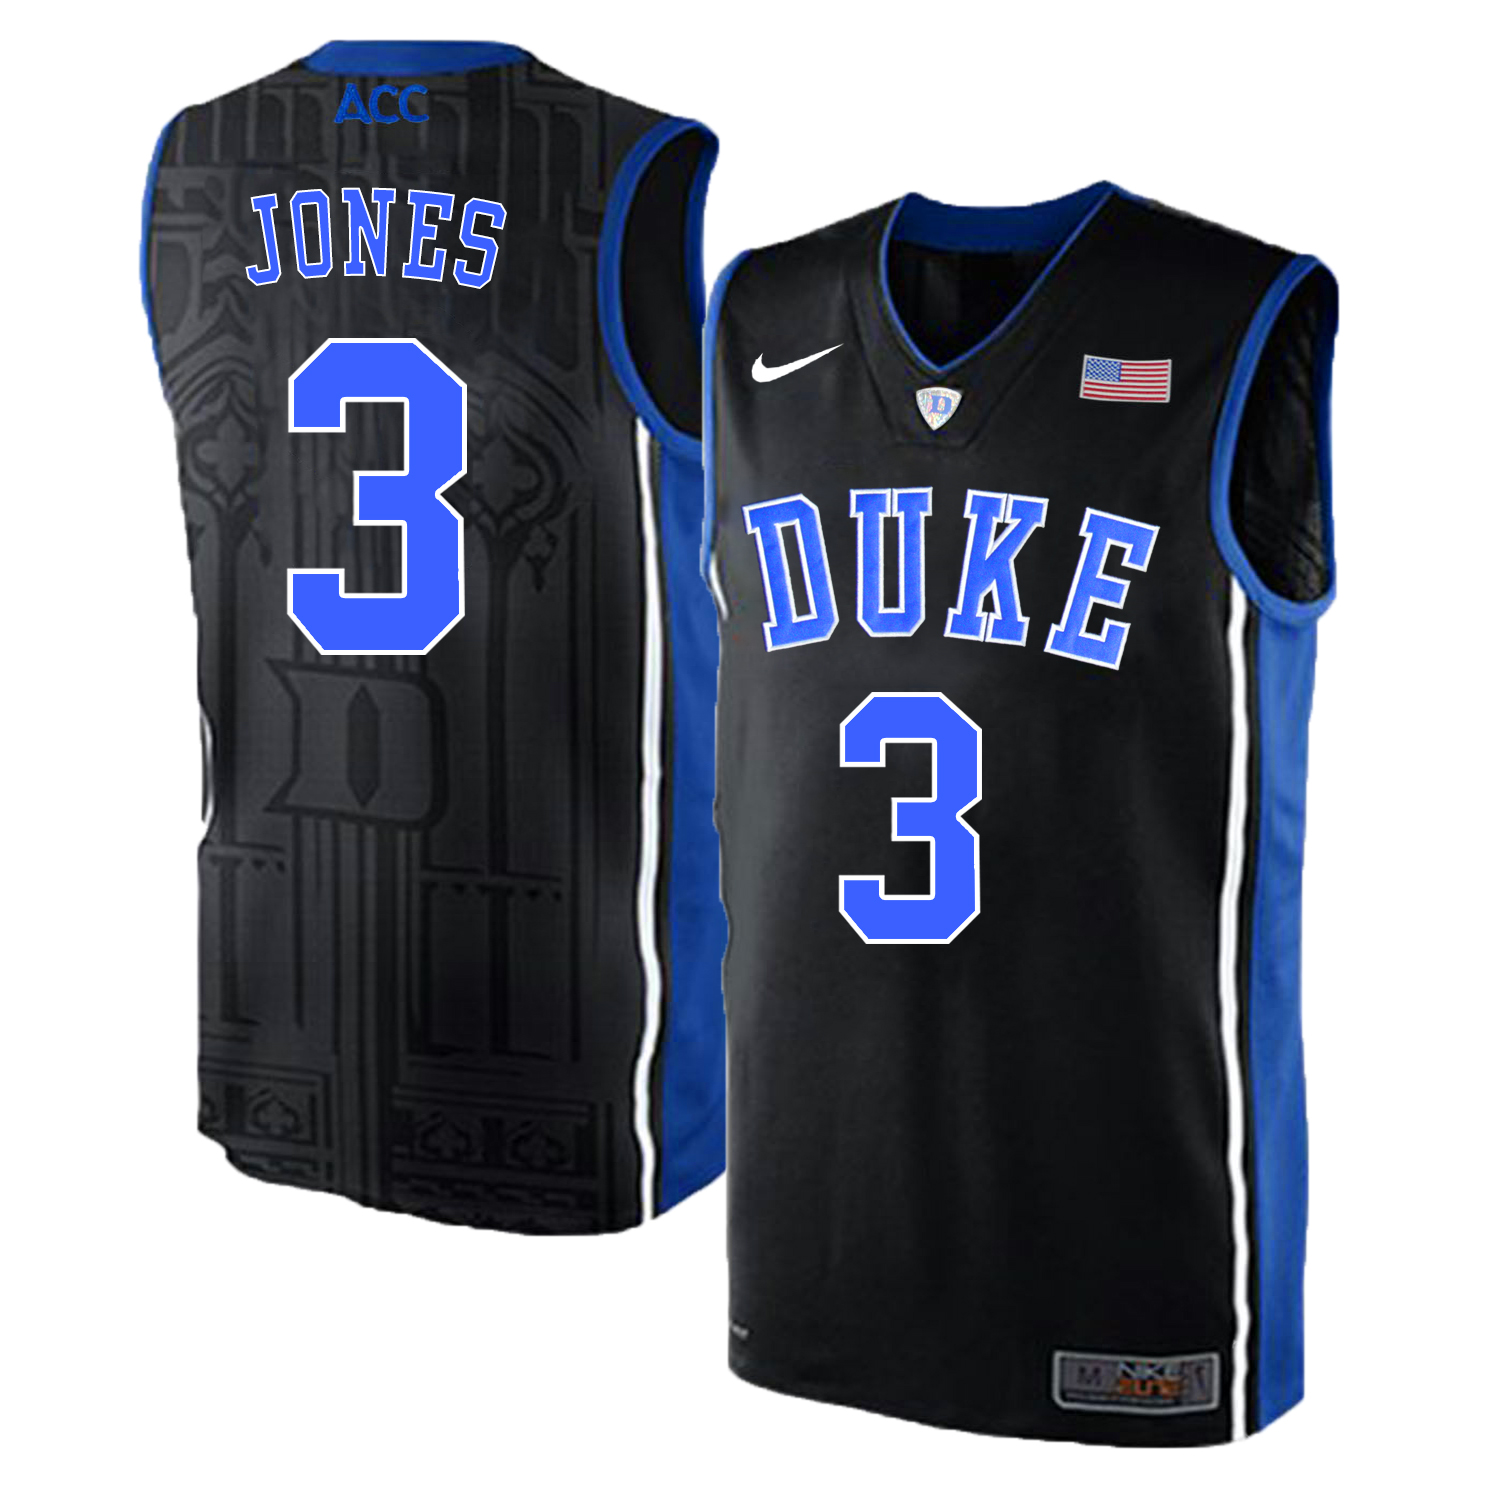 Duke Blue Devils 3 Tre Jones Black Elite Nike College Basketball Jersey